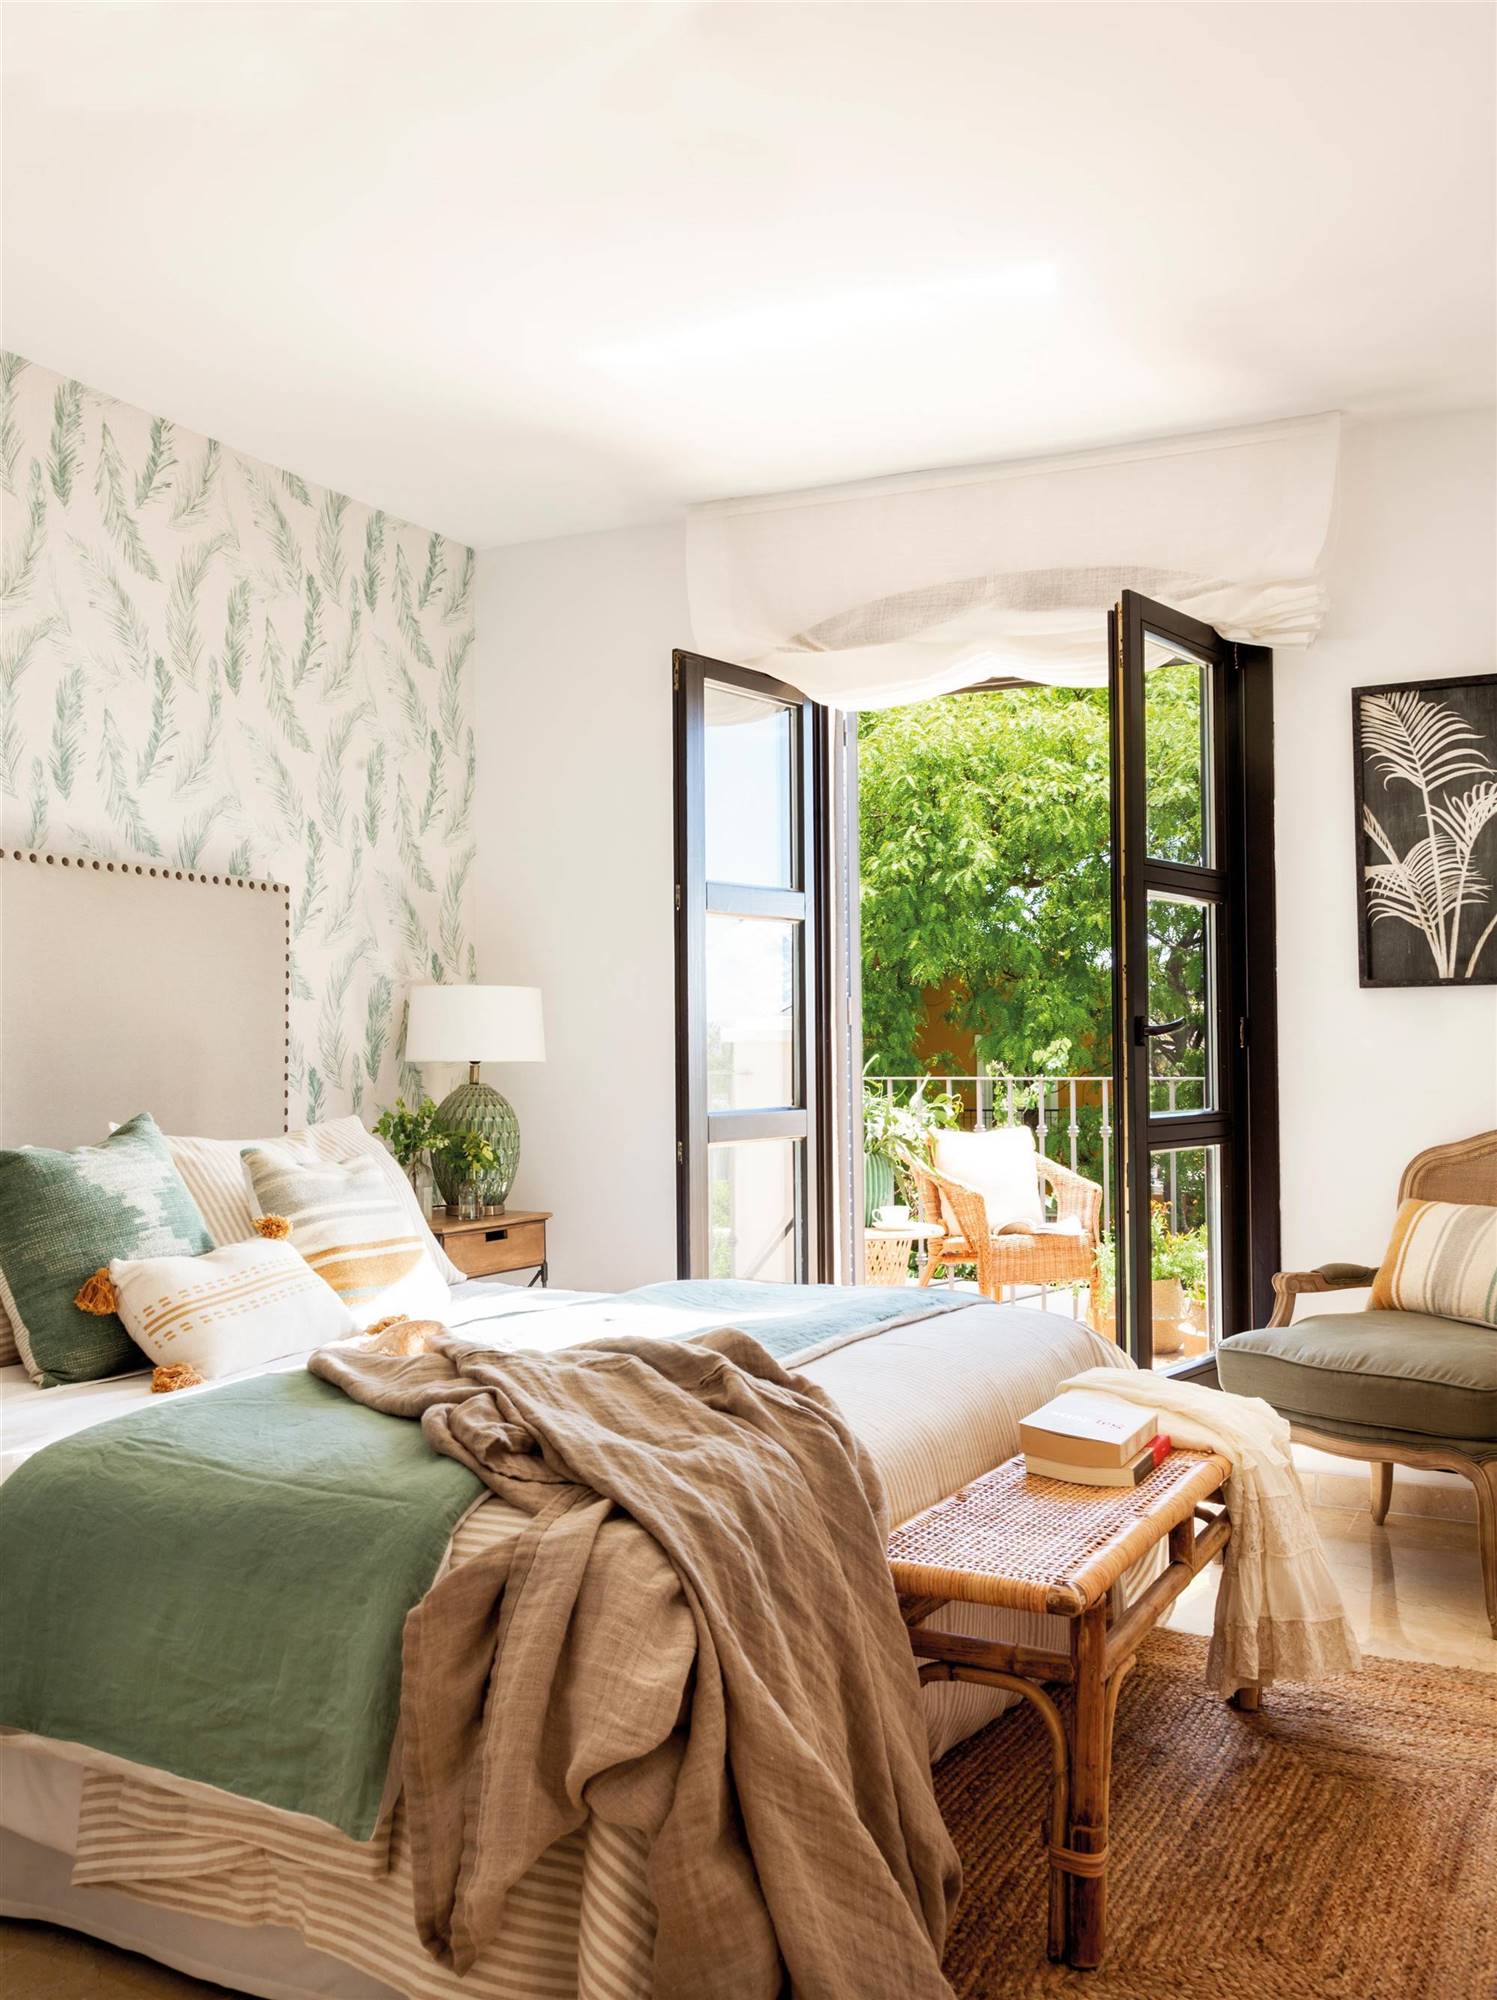 Dormitorio en tonos verdes y materiales de fibras naturales.